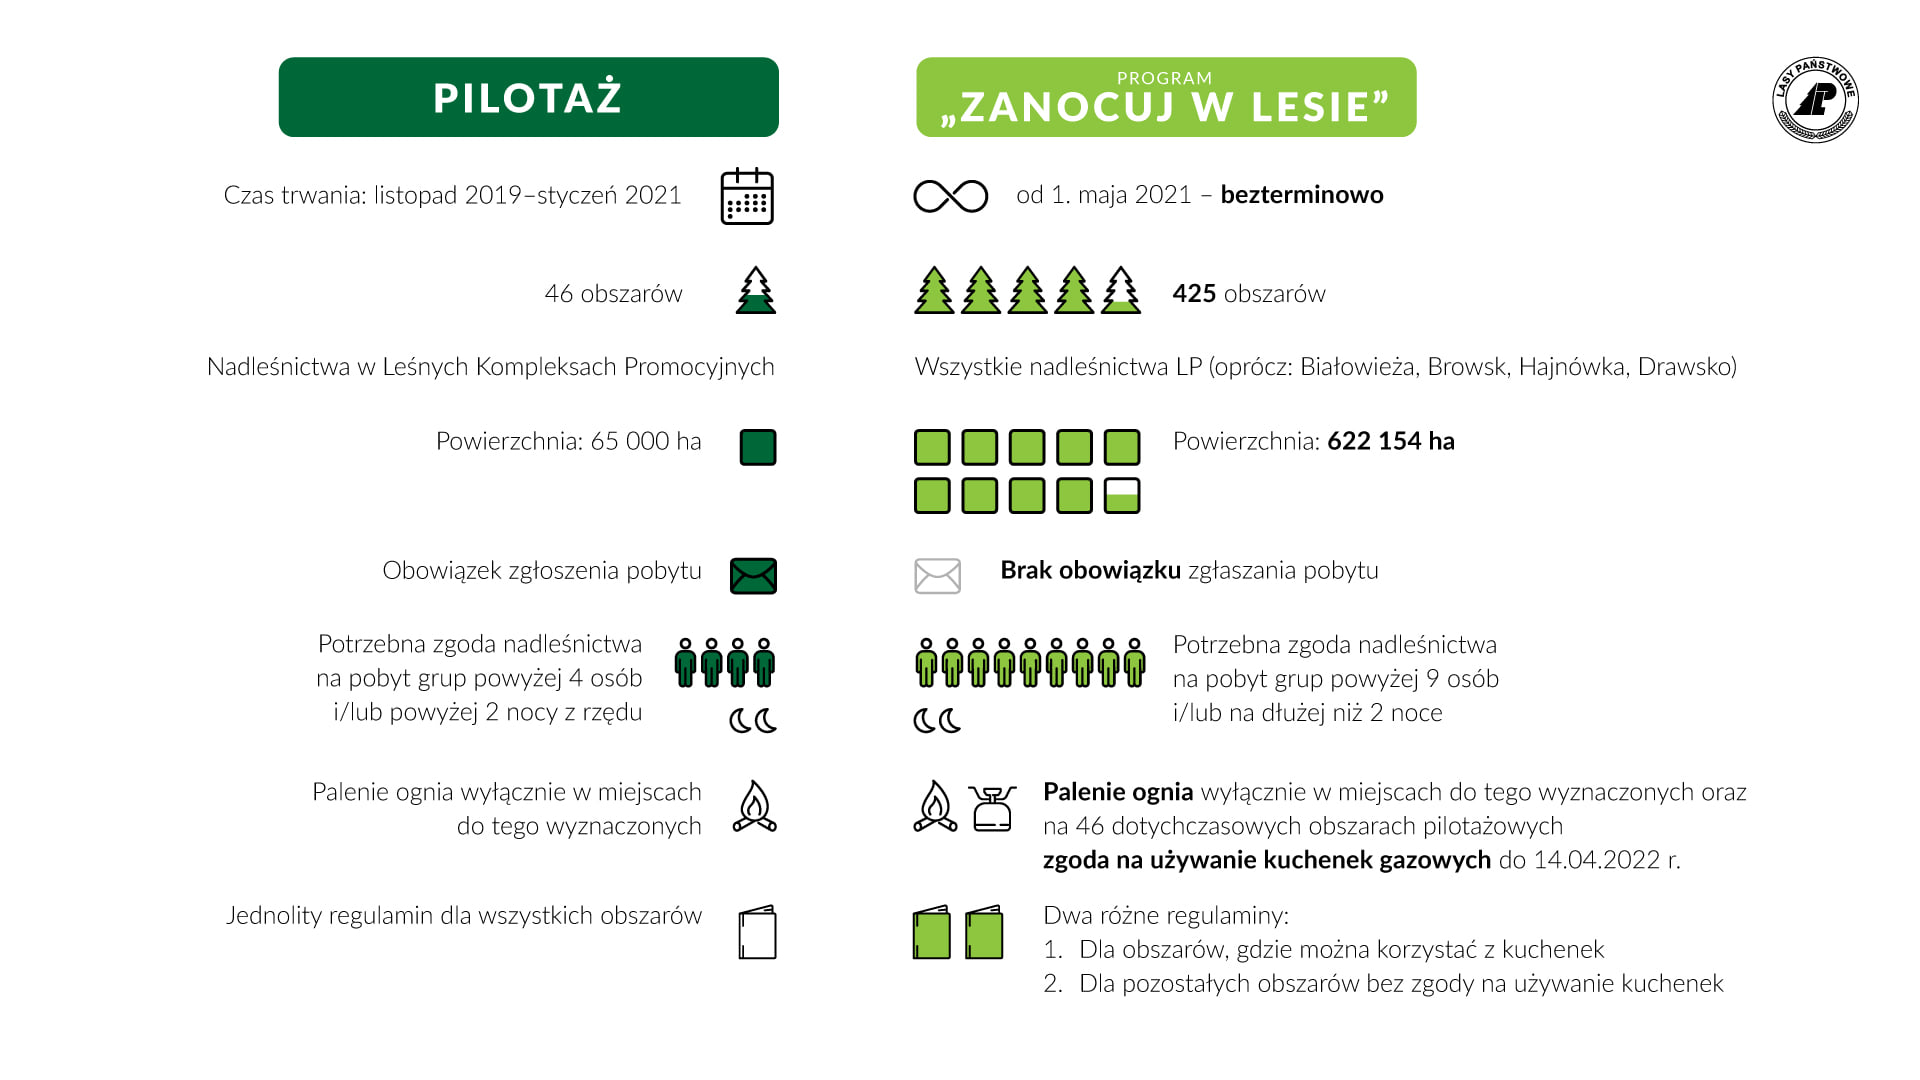 Zanocuj w lesie - infografika. Stowarzyszenie Polska Szkoła Surwiwalu promuje biwalowanie w polskich lasach.